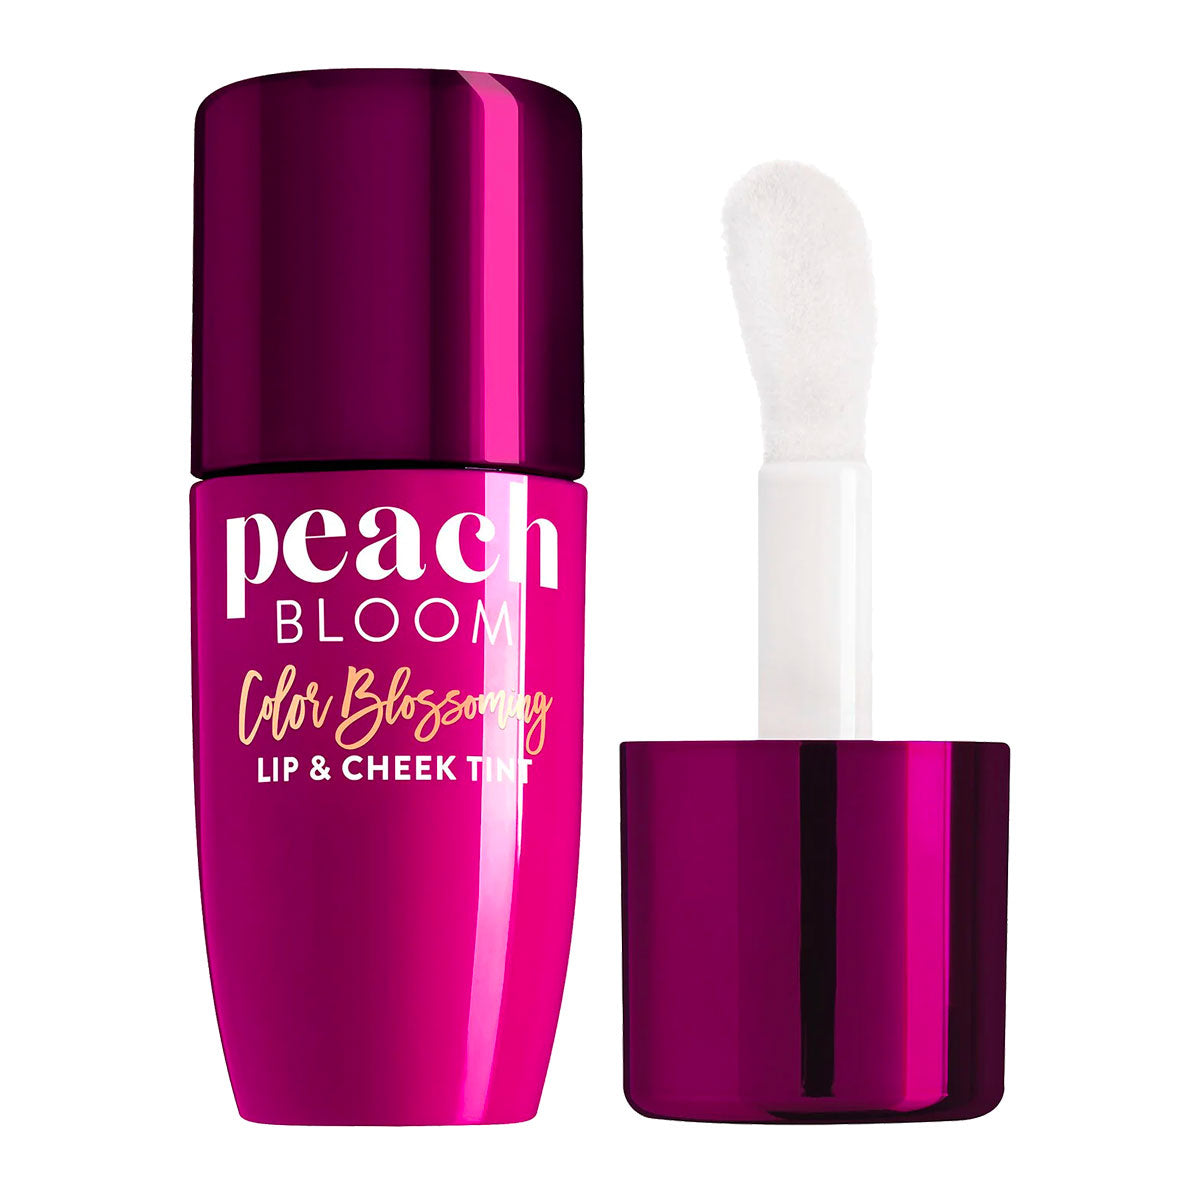 Too Faced Peach Bloom Lip & Cheek Tint | Grape Pop Glow